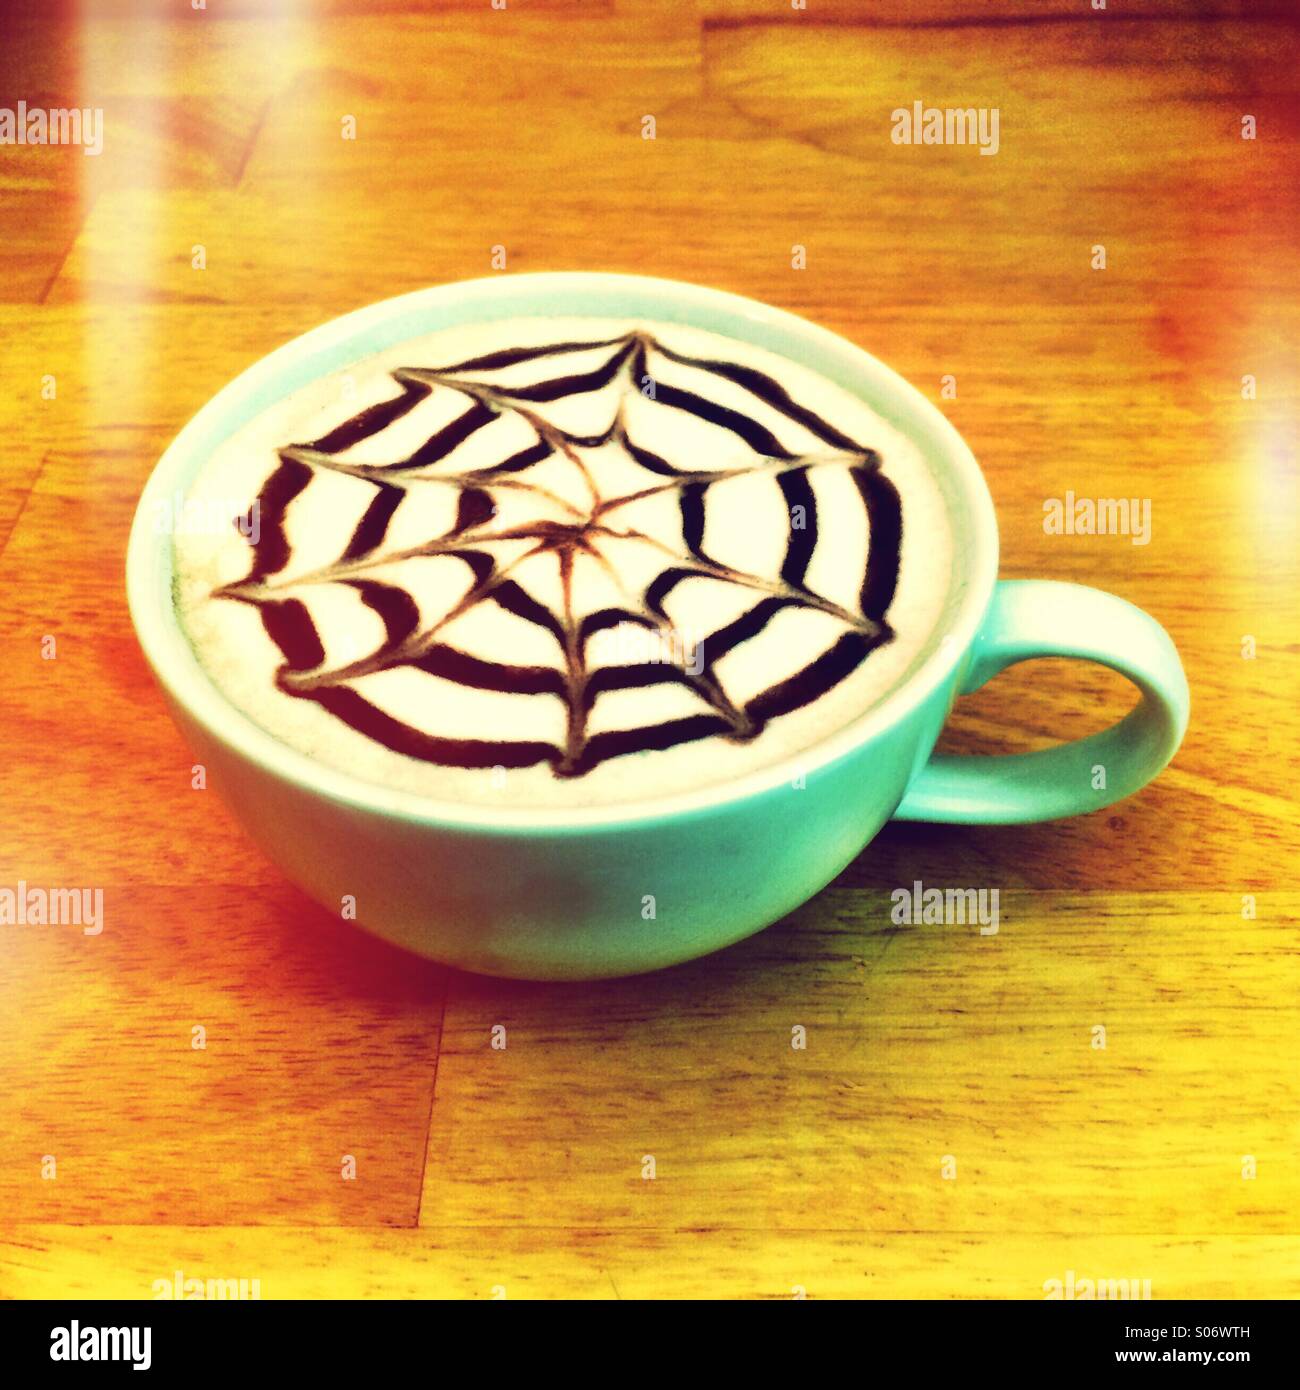 Latte caffè con un design in sciroppo al cioccolato sulla parte superiore. Foto Stock